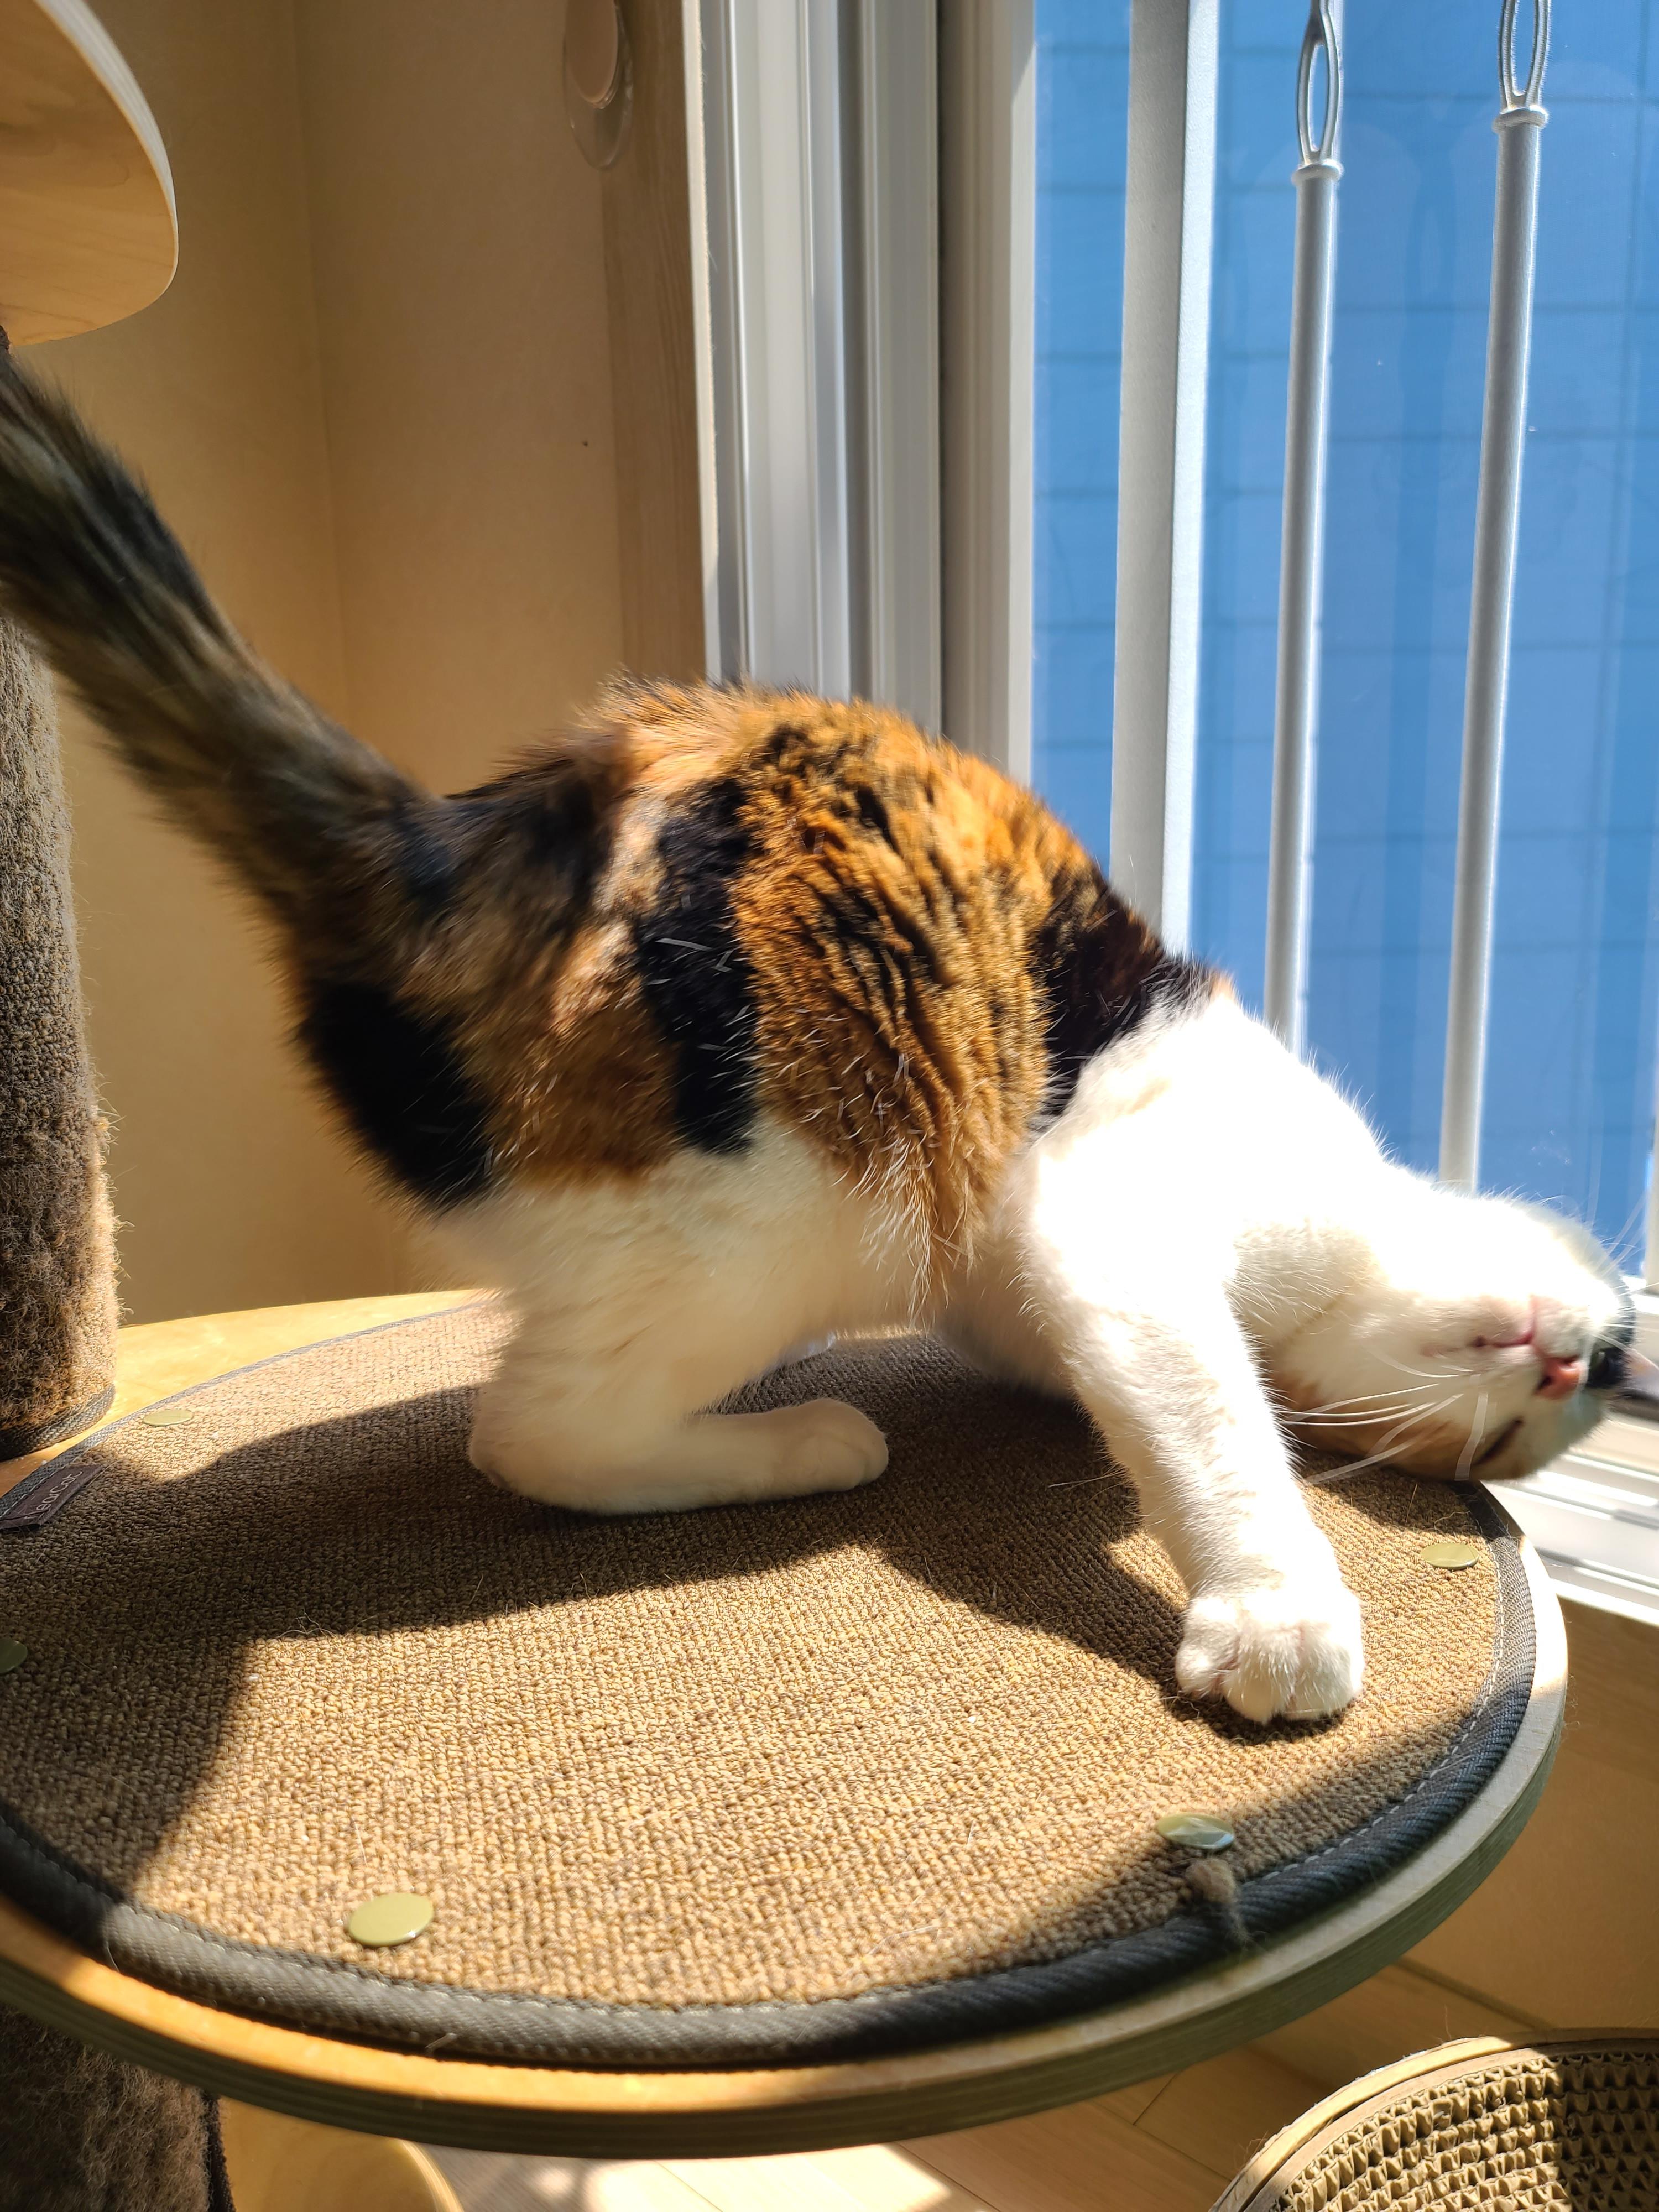 햇빛 쬐면 아기맹수로 변신하는 삼색이 고양이 요미.